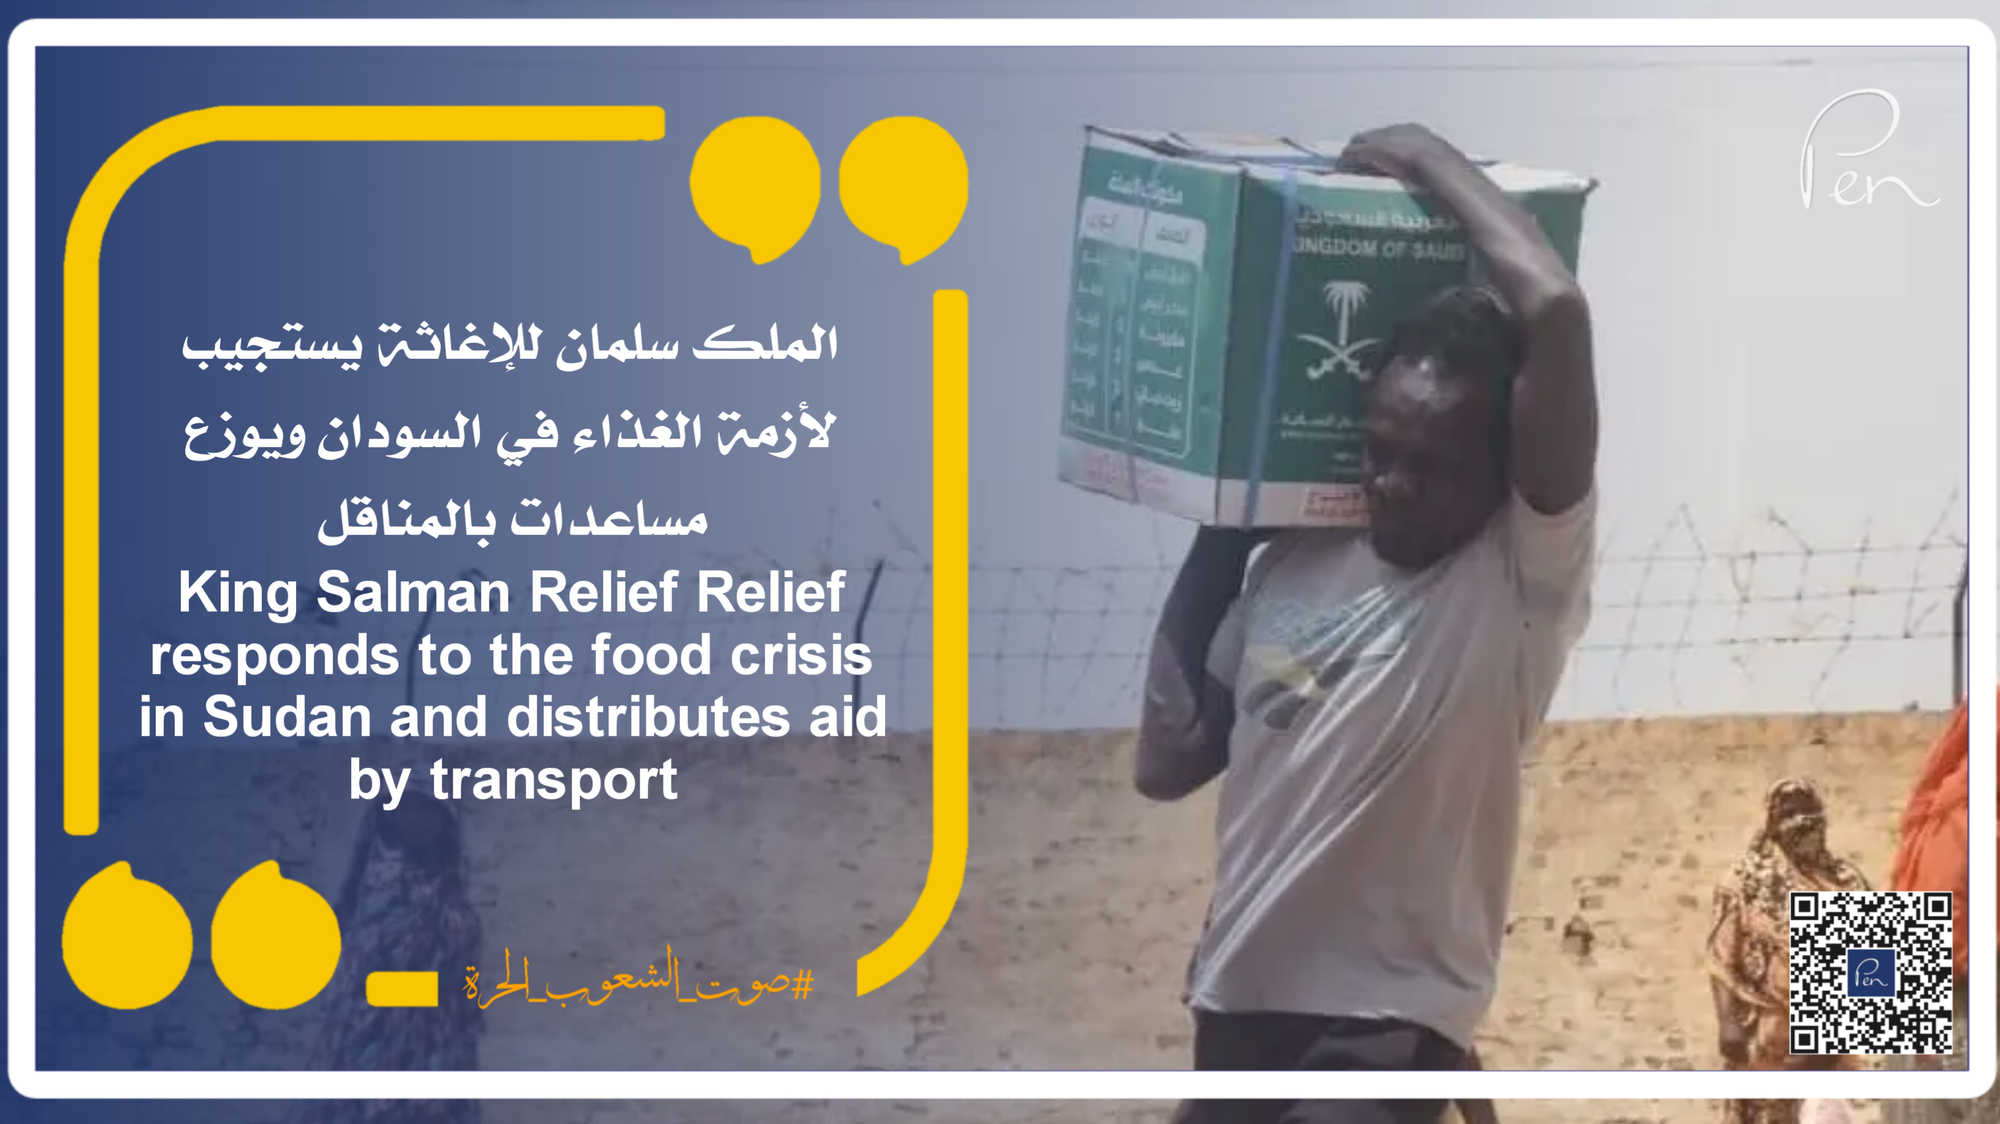 الملك سلمان للإغاثة يستجيب لأزمة الغذاء في السودان ويوزع مساعدات بالمناقل